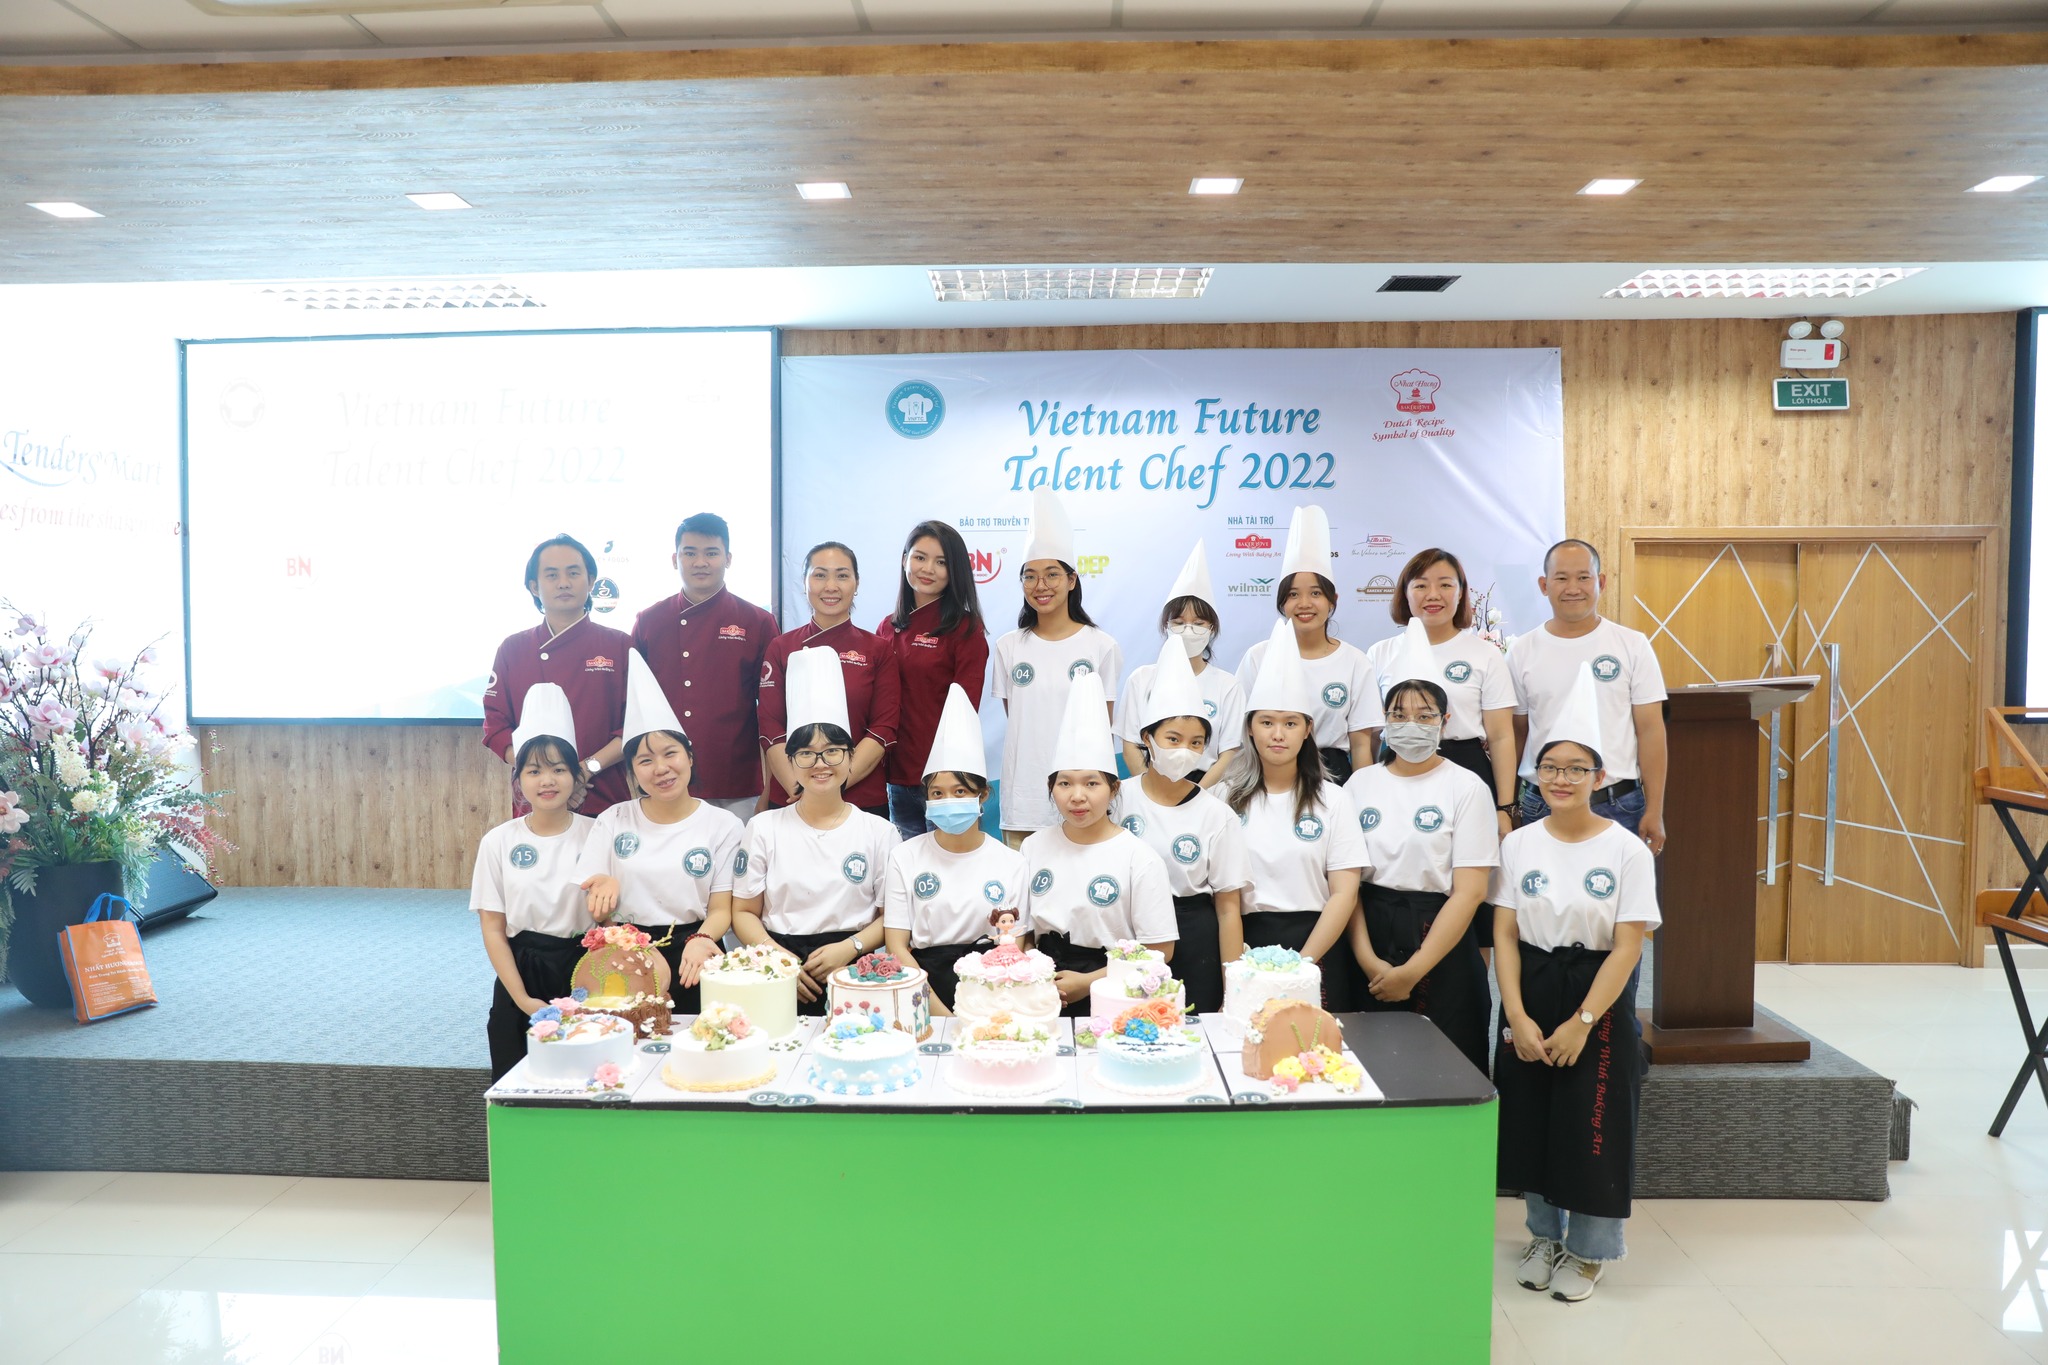 Vietnam Future Talent Chef 2022 khu vực TP.HCM - Vòng 2 "Chinh Phục Đam Mê"